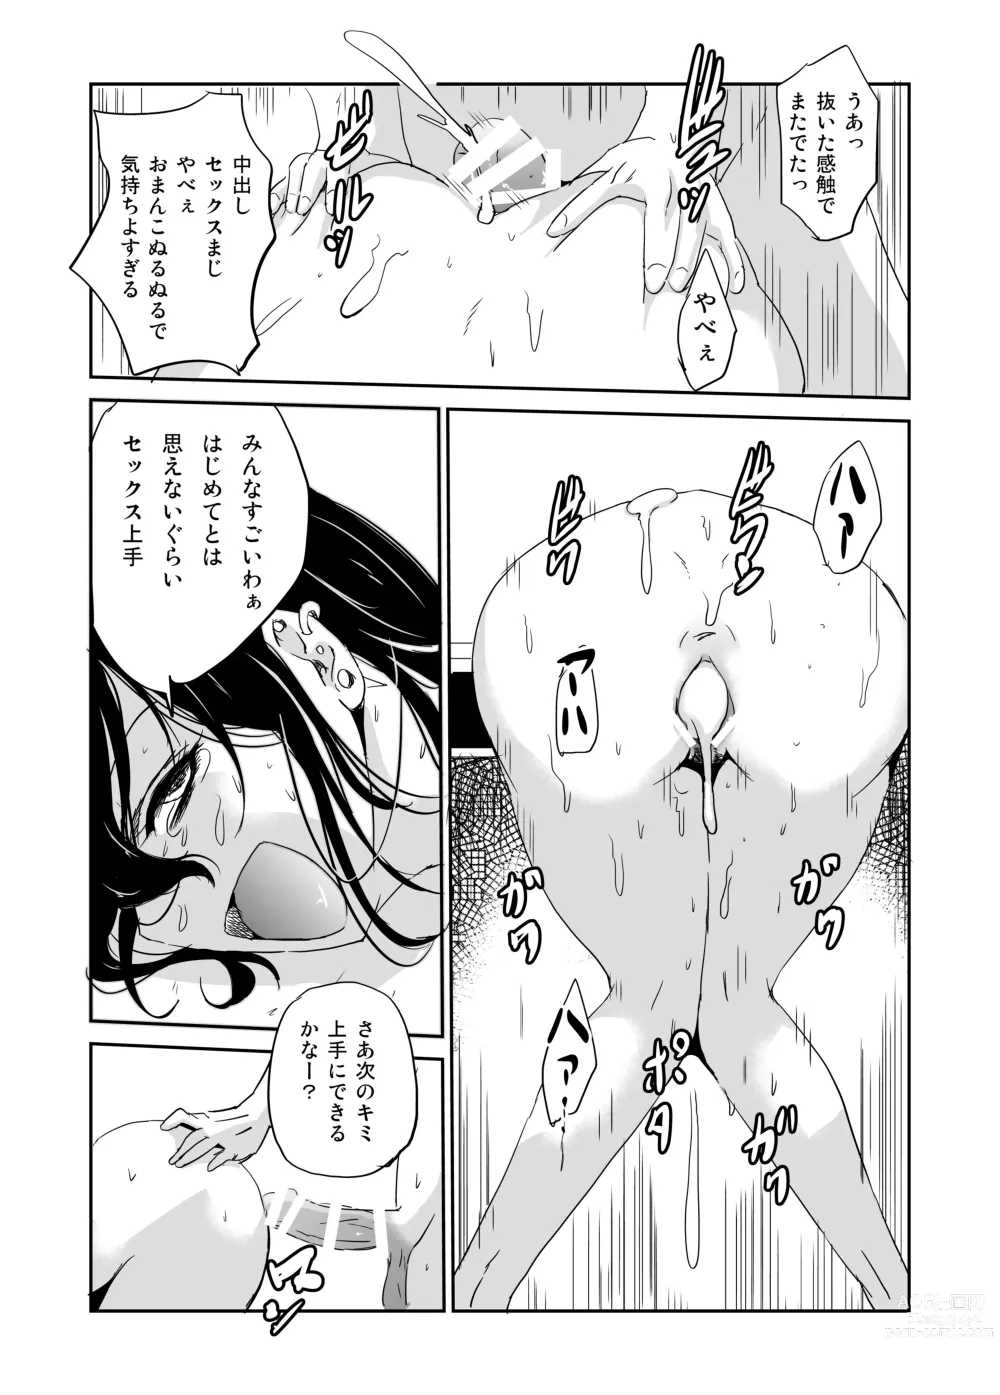 Page 9 of doujinshi Inran Onna Kyoushi  no  Doutei Sotsugyoushiki